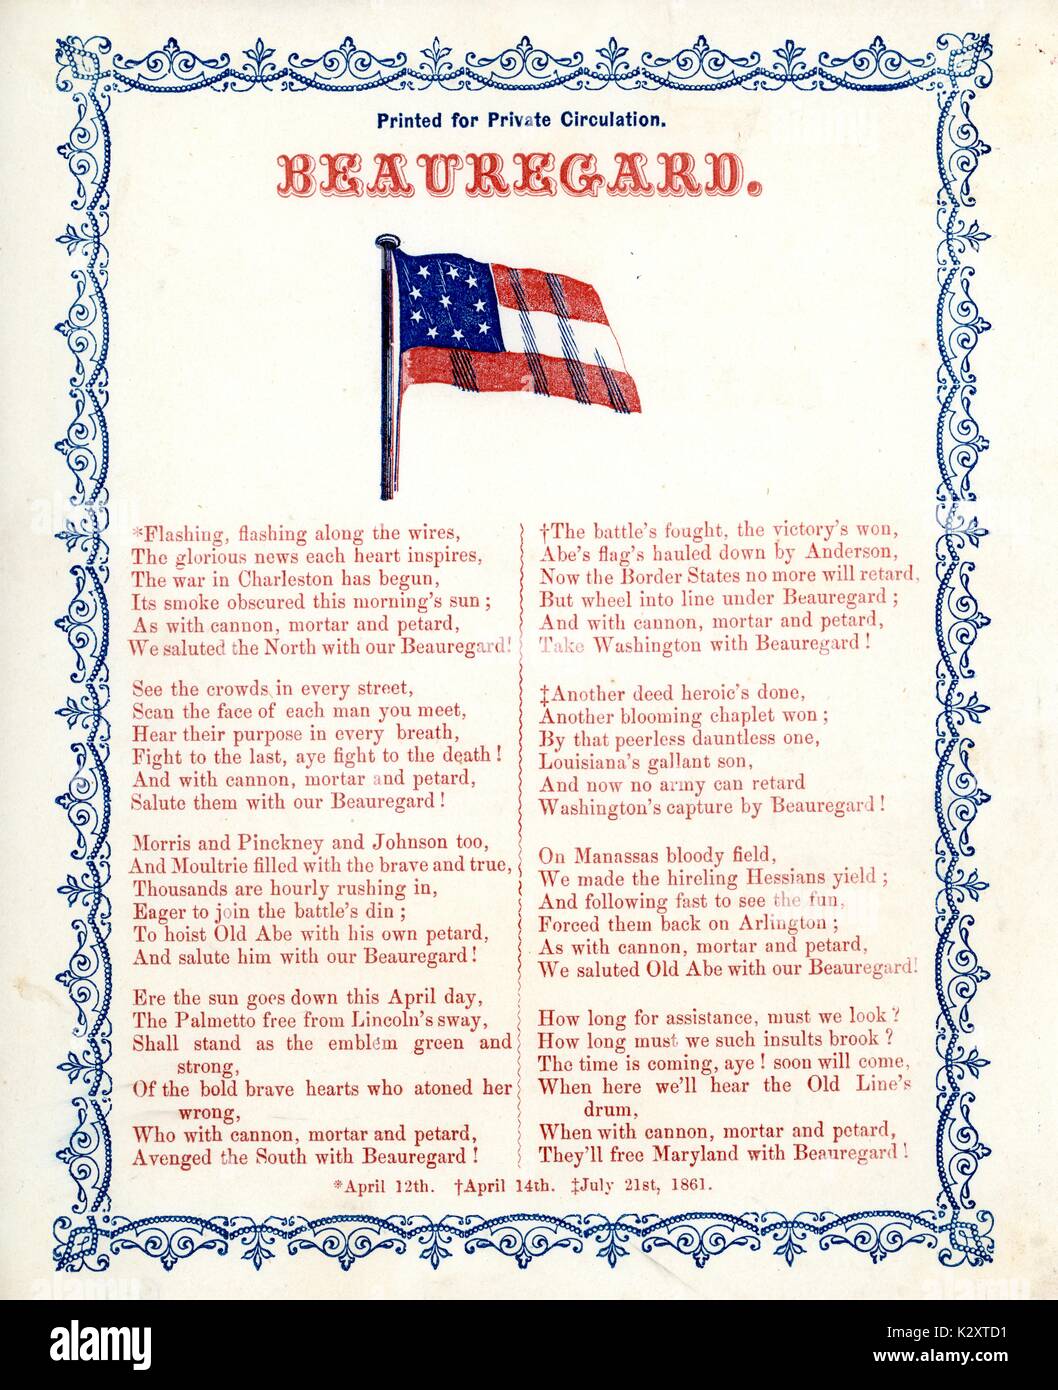 Costeggiata dalla guerra civile americana, intitolata "Beauregard', documentare i successi di battaglia dei confederati P.G.T. generale Beauregard, 1861. Foto Stock